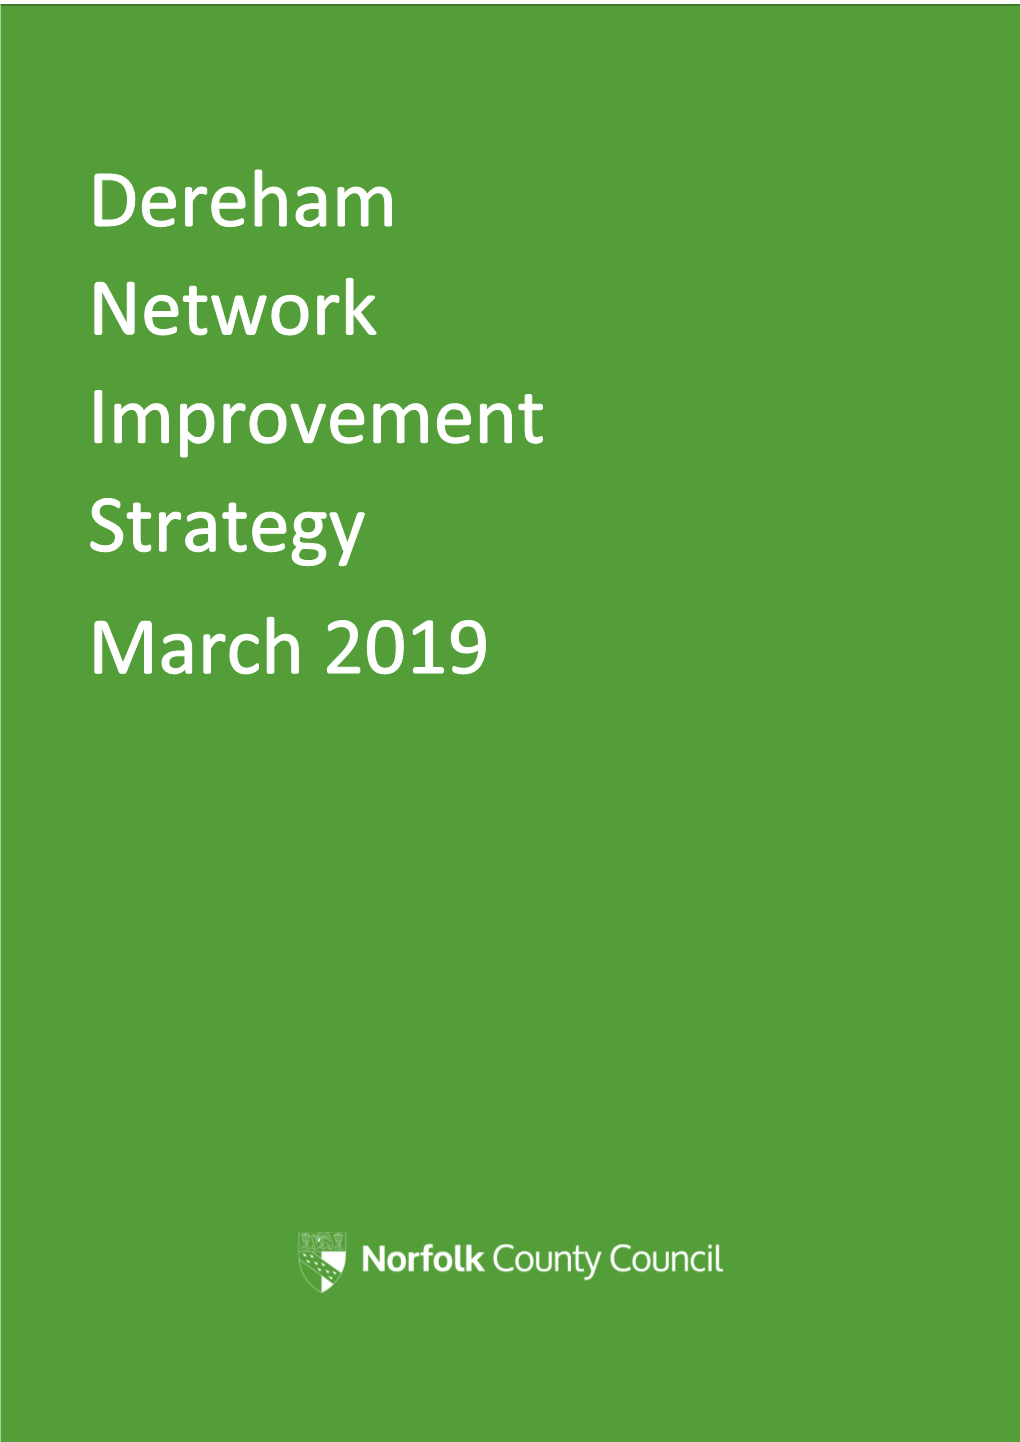 Dereham Network Improvement Strategy